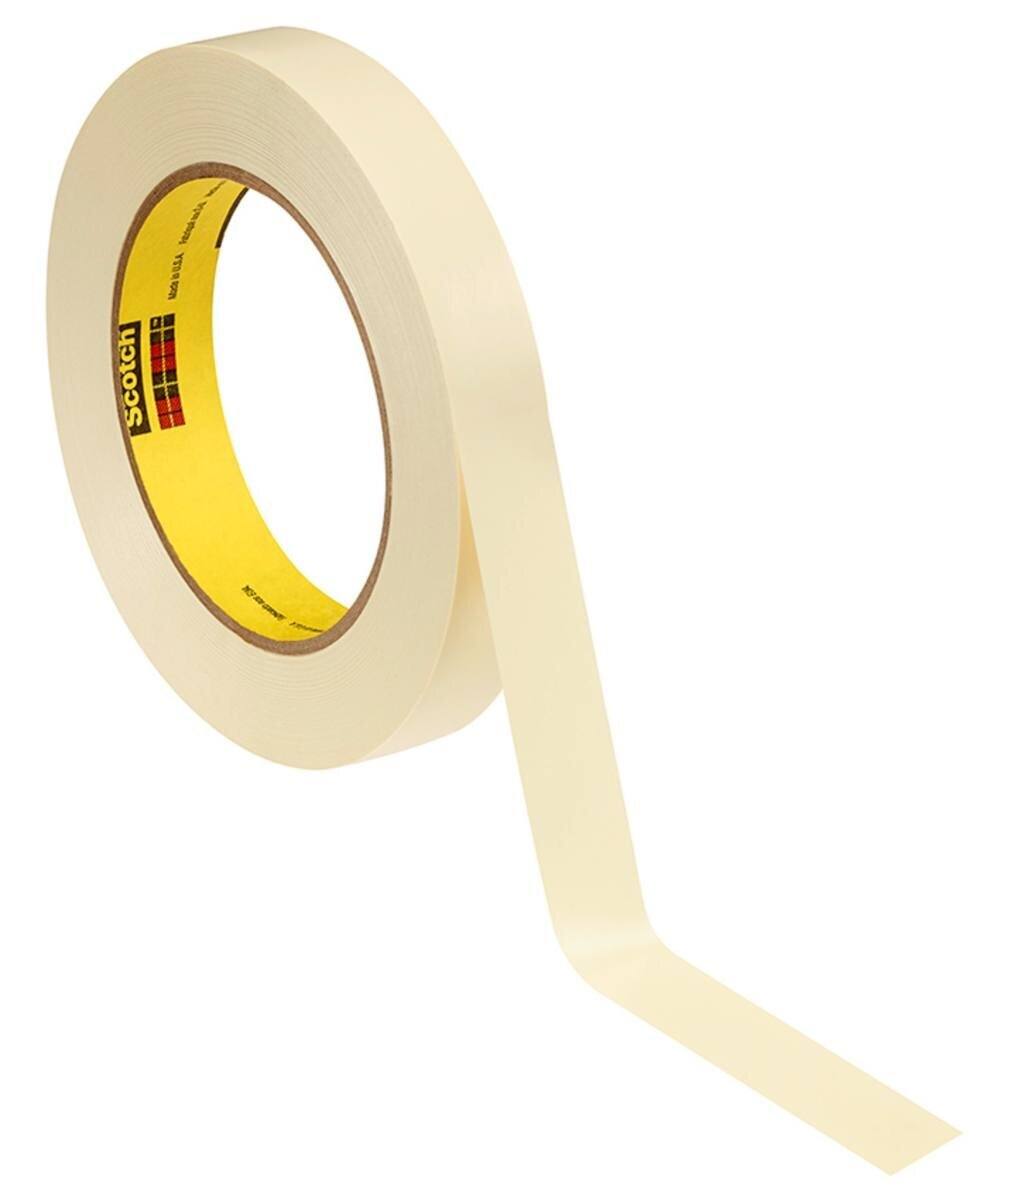 3M Galvanikklebeband Weich-PVC 470, gelb, 25 mm x 33 m, 0,18 mm